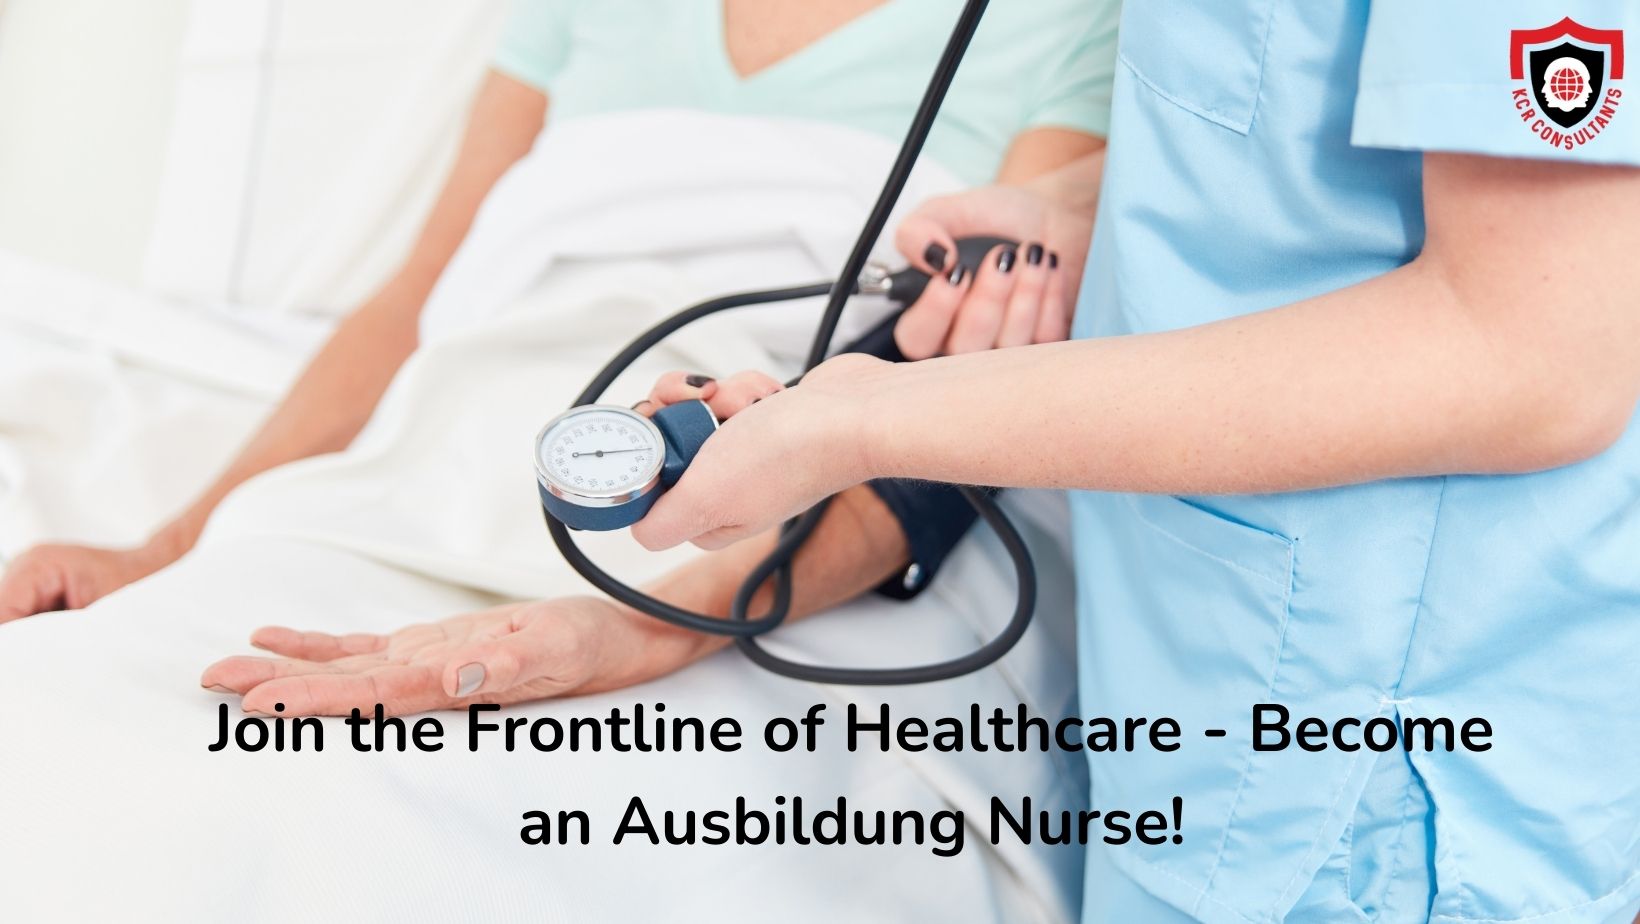 Ausbildung Nursing - KCR CONSULTANTS - Nursing Jobs in Germany